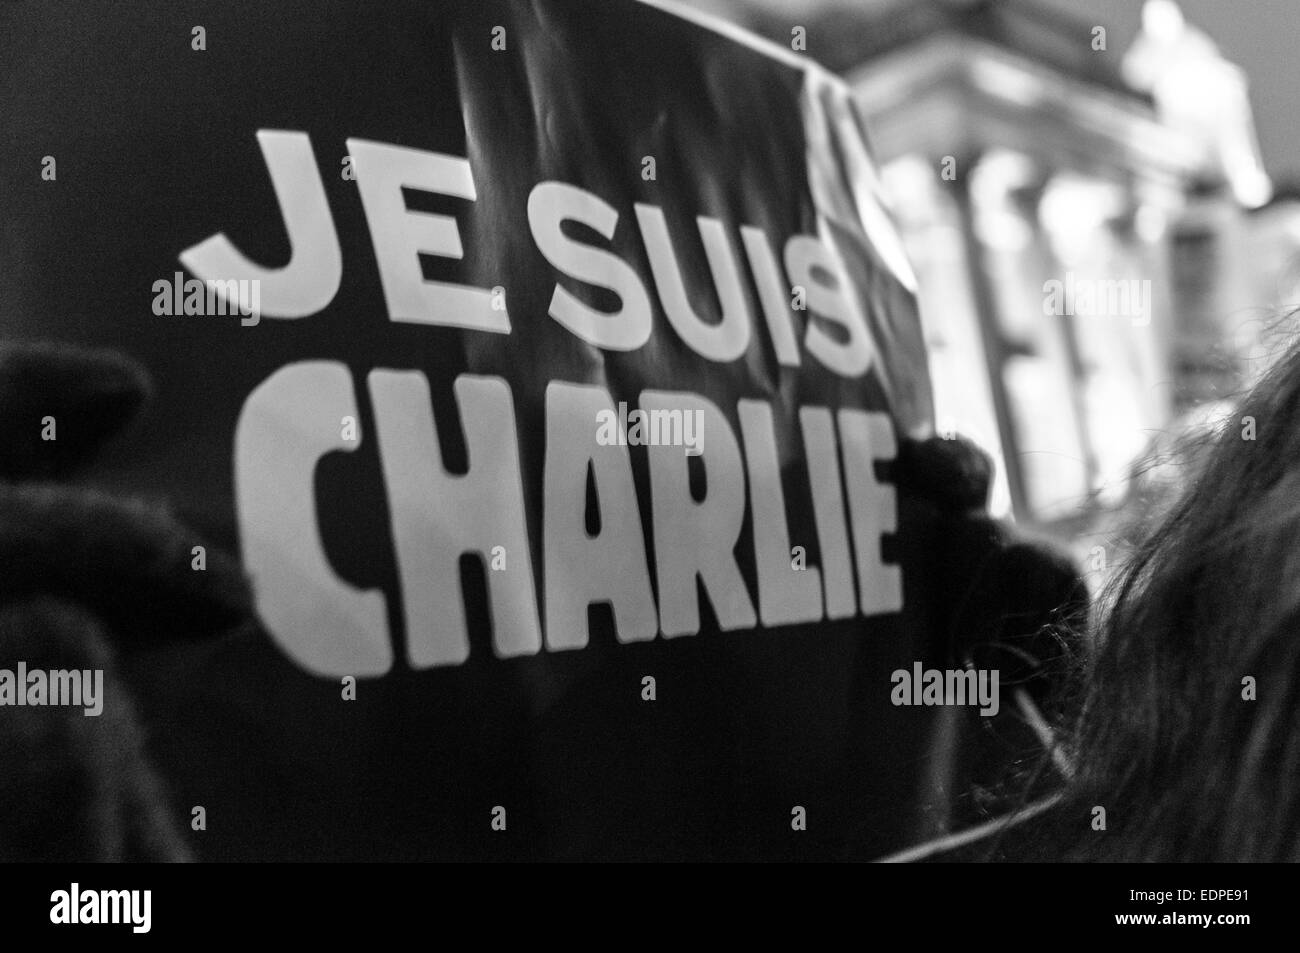 London, UK. 7. Januar 2015.  Menschen versammelten sich am Trafalgar Square um ihre Unterstützung für die Opfer des Terroranschlags gegen die französische Zeitschrift Charlie Hebdo zeigen. Sie halten Plakate mit den Worten "Je Suis Charlie" (ich bin Charlie). Vierzehn Menschen wurden getötet, darunter zwei Polizisten, wenn zwei bis vier maskierte bewaffnete das Feuer am Hauptsitz von Charlie Hebdo in Paris, Frankreich-Credit eröffnete: onebluelight.com/Alamy Live News Stockfoto